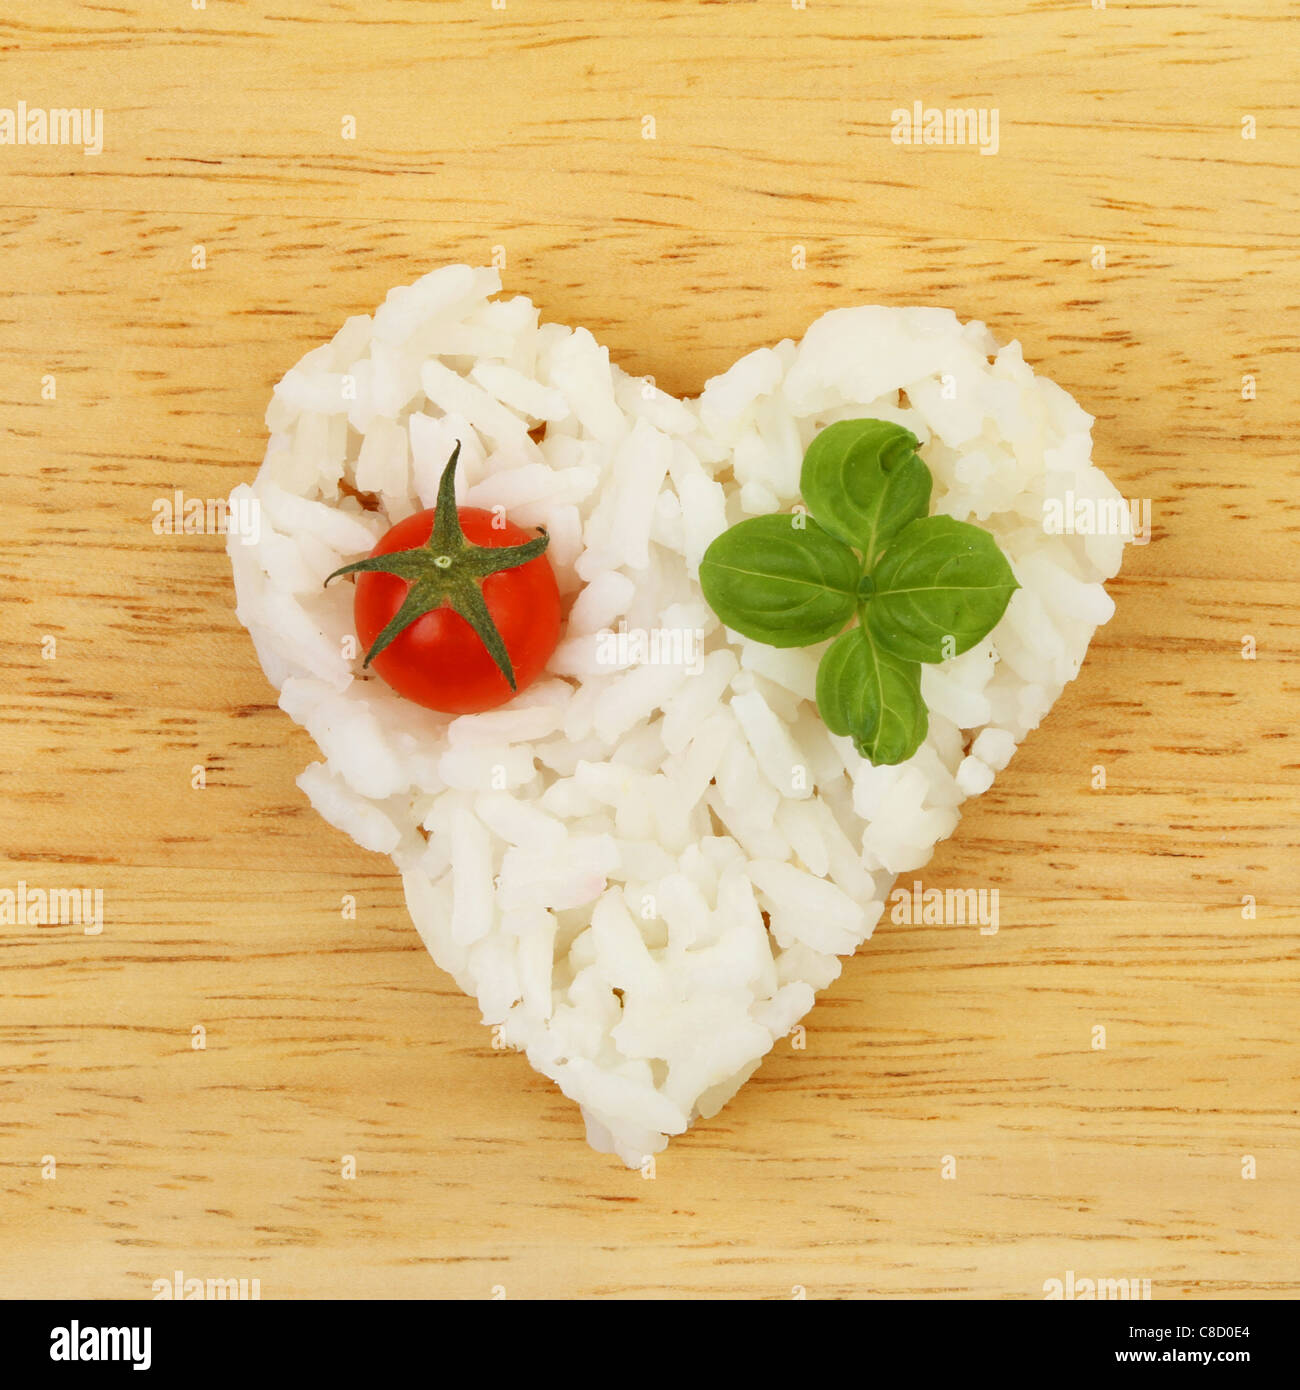 Cibo sano, il riso in una forma di cuore con pomodoro e basilico su una tavola di legno Foto Stock